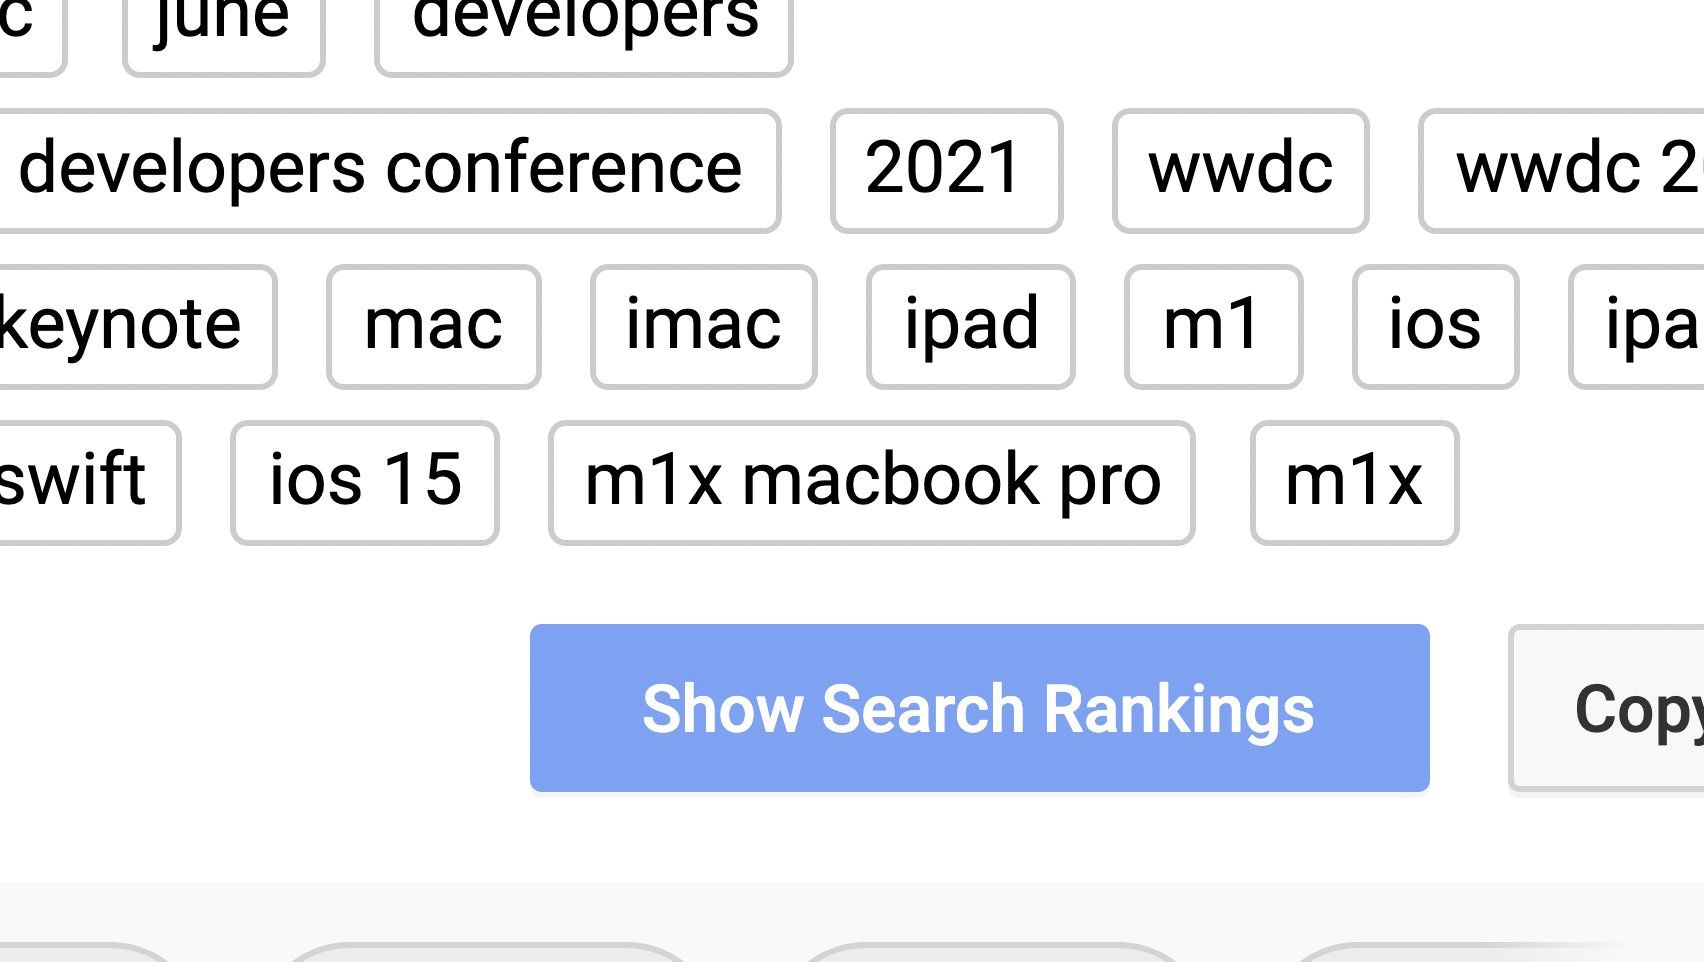 Apple включила MacBook Pro с M1X в теги трансляции WWDC на YouTube